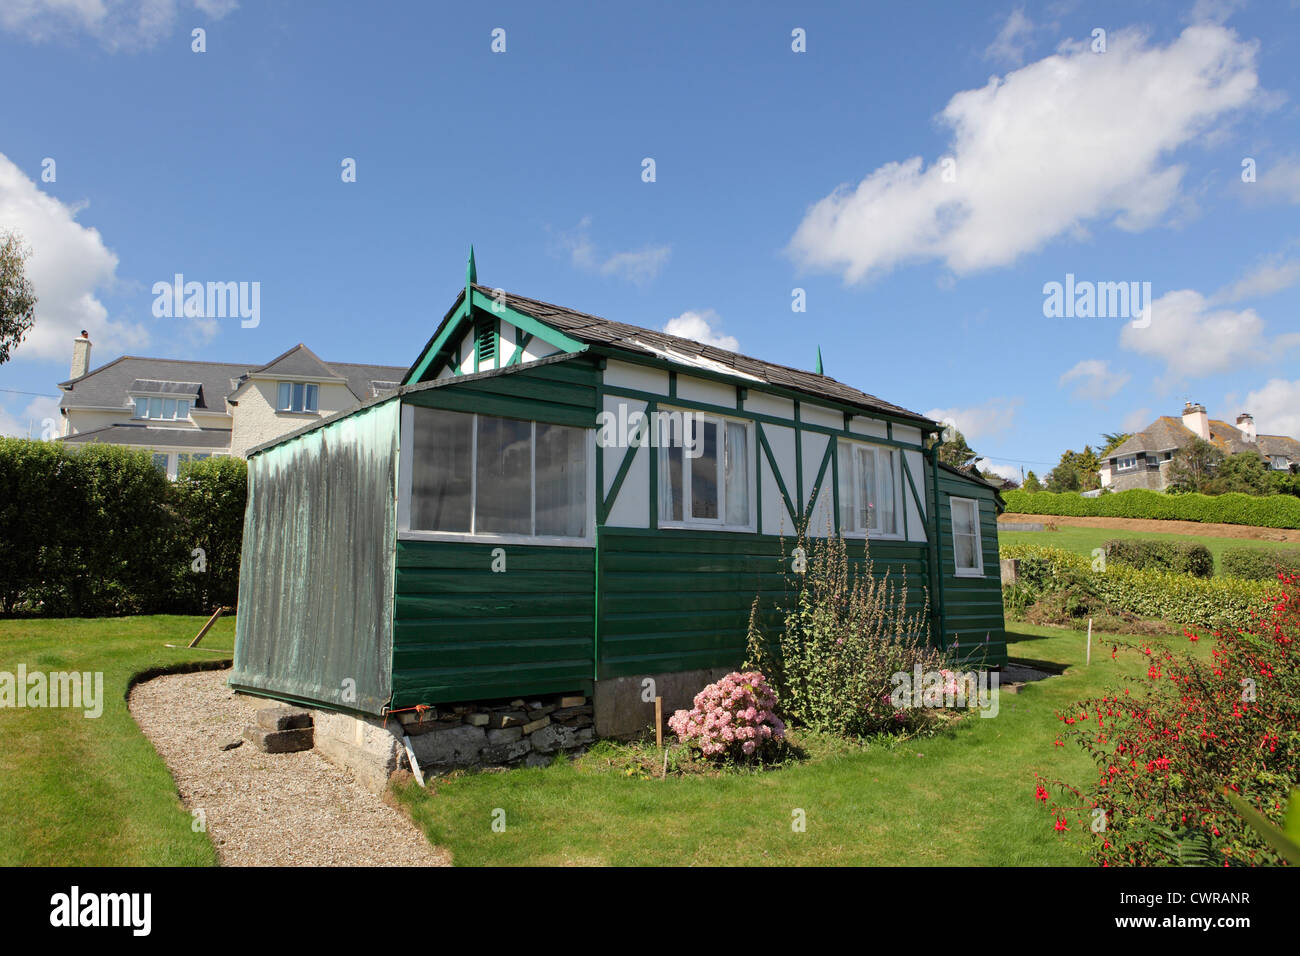 UK Gehäuse Lager außen sonnigen blauen Himmel. Kleine grüne freistehende Bretterbude Ferien-Bungalow in St Mawes, Cornwall, UK. Stockfoto